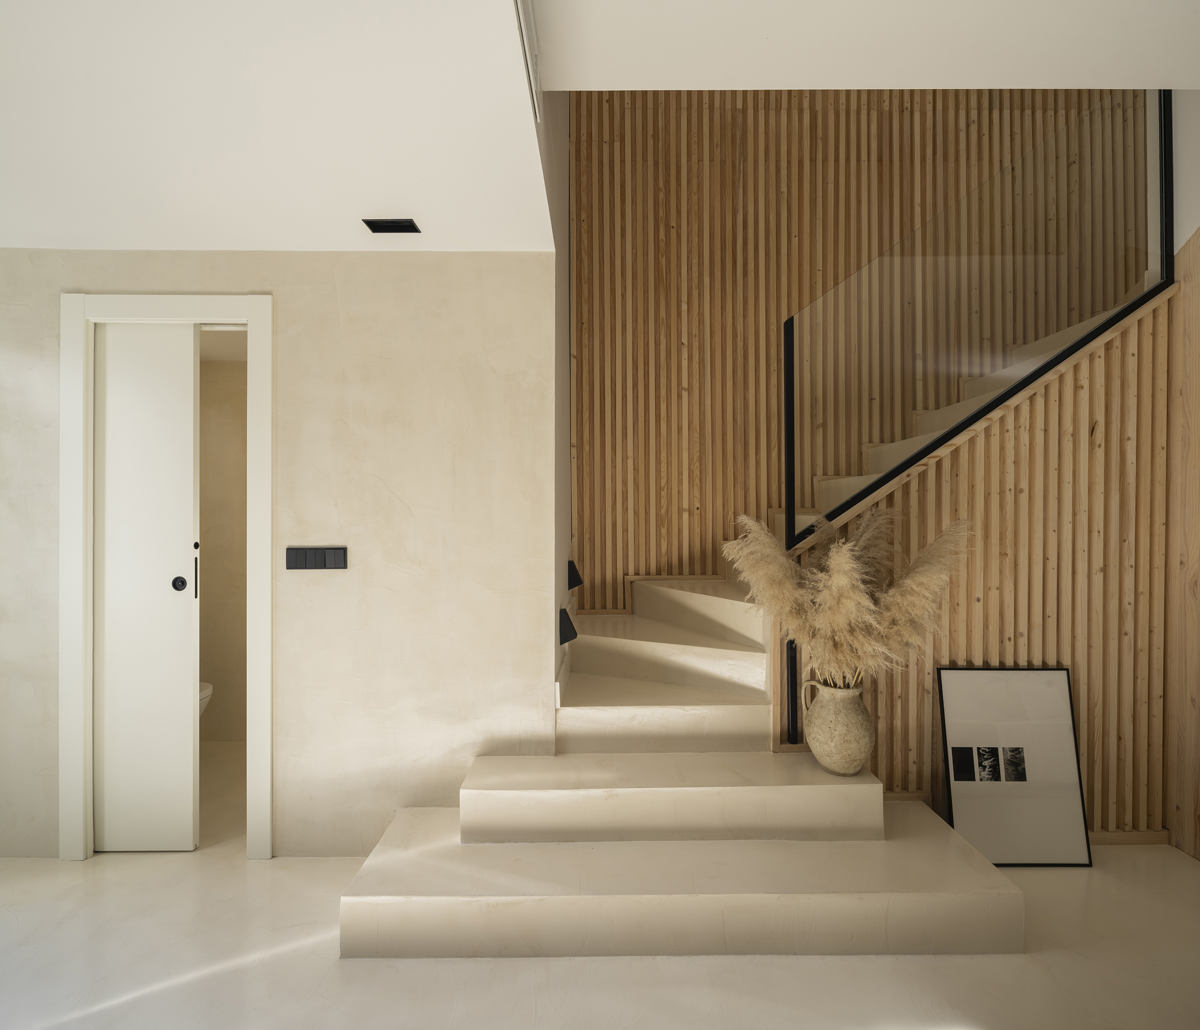 Mikrozement auf Treppen, Wänden und Boden im Projekt Jara in Granada.